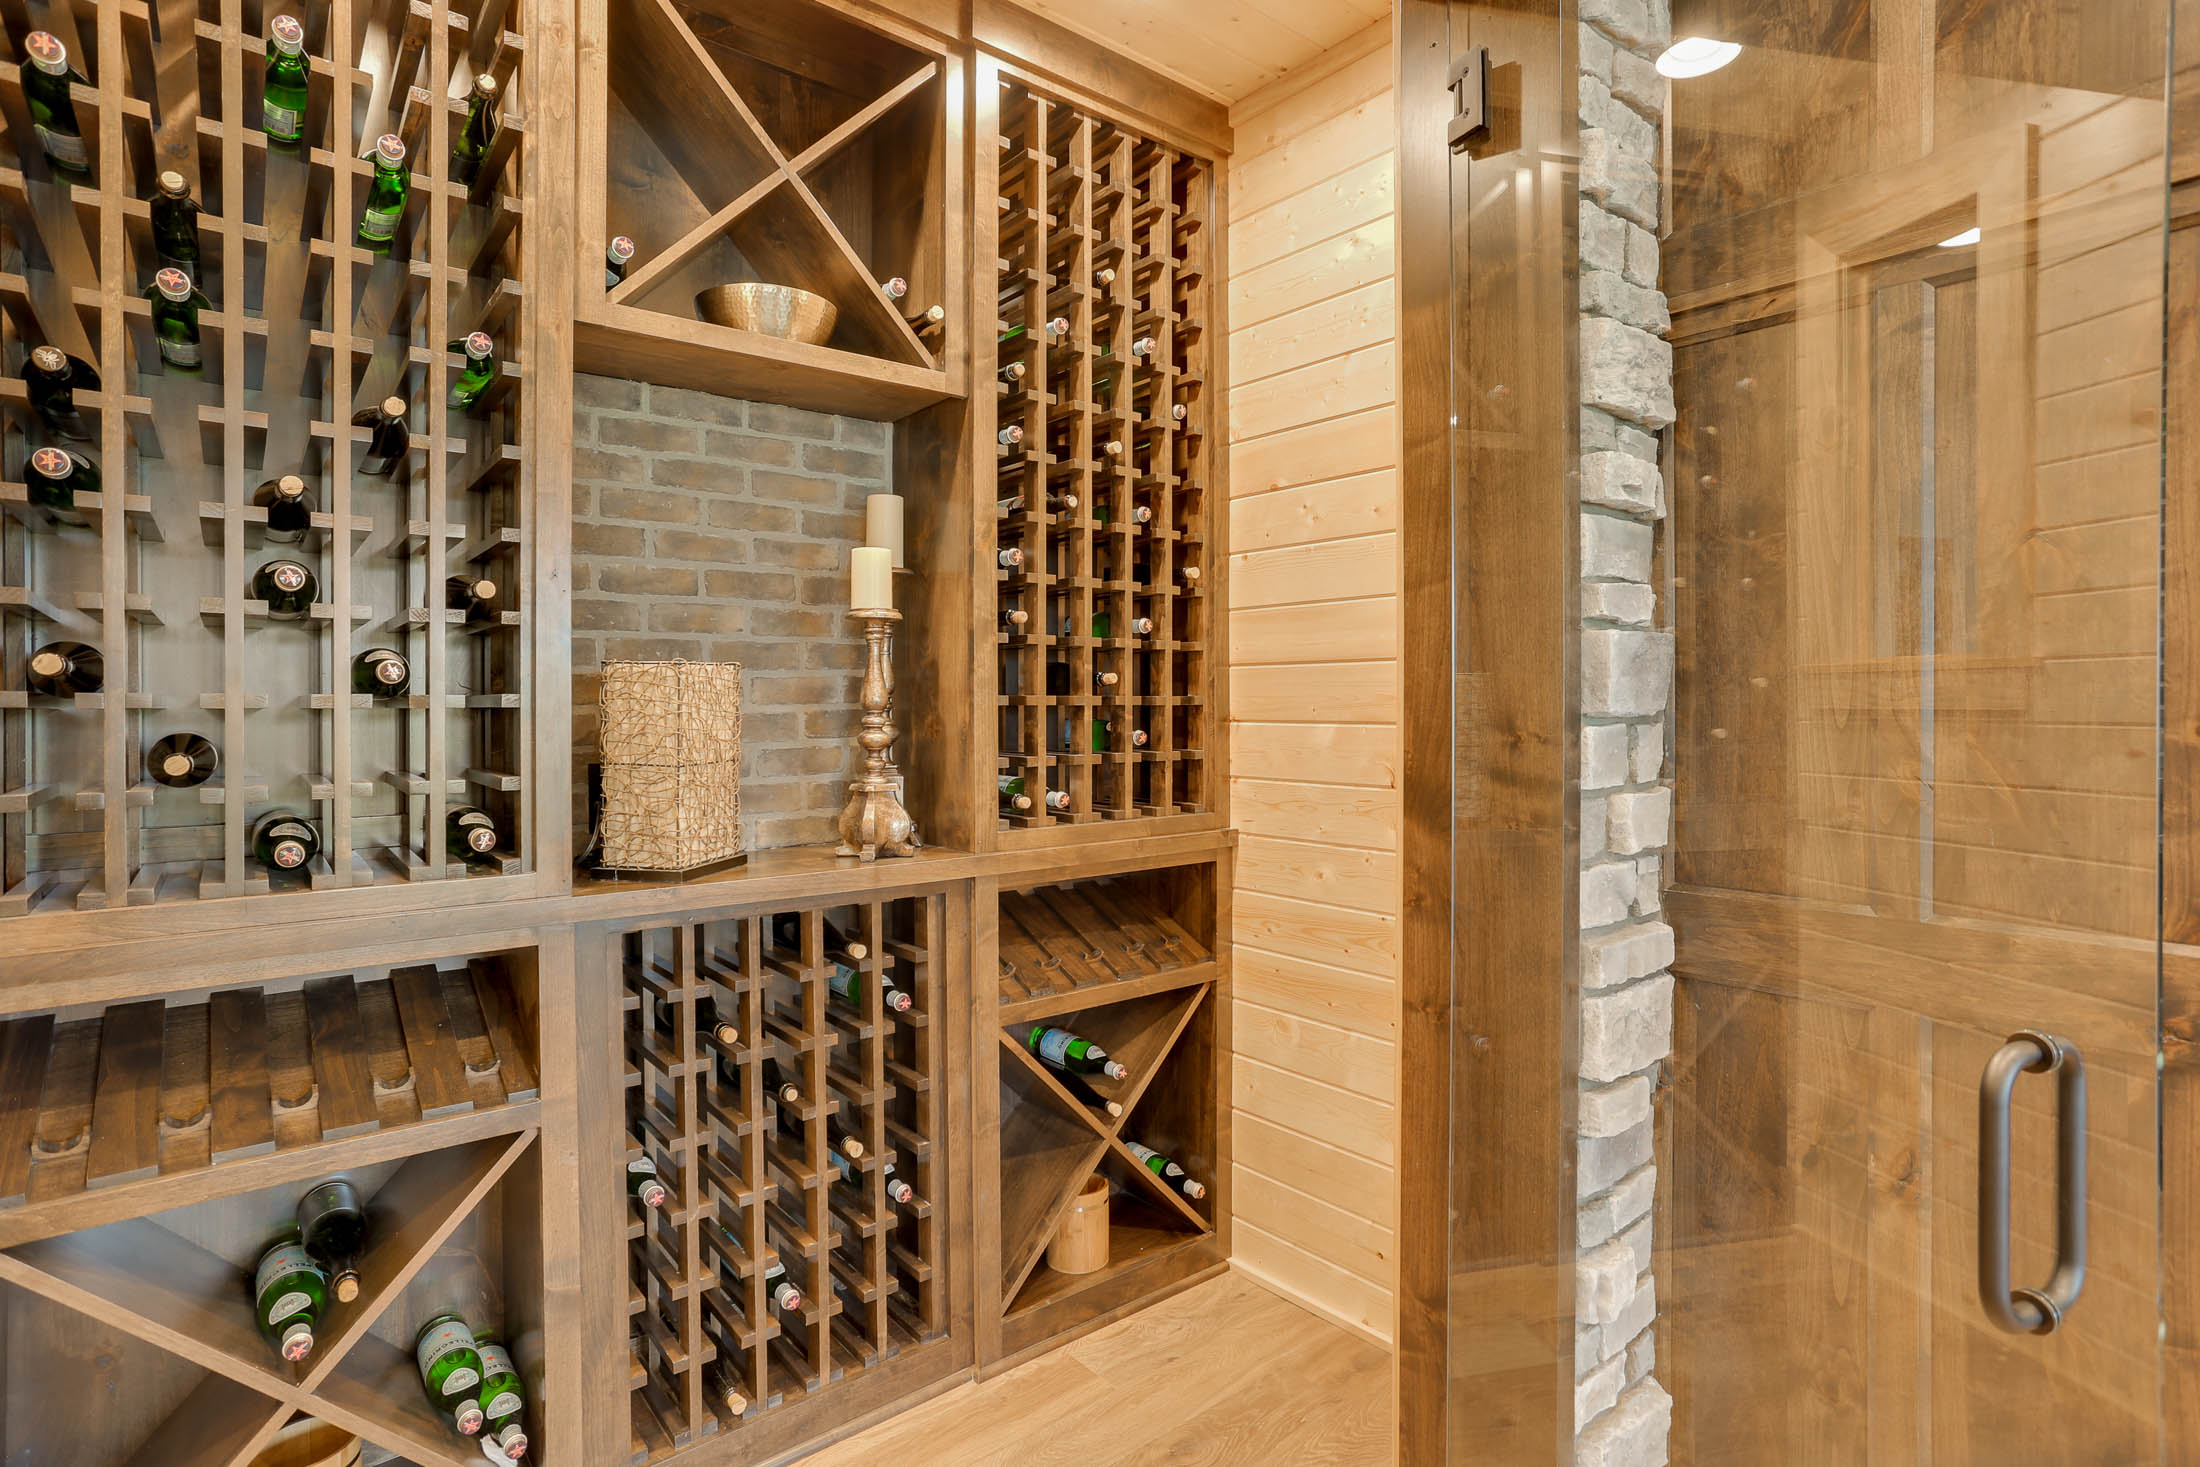 Wow look at the glass door wine cellar!